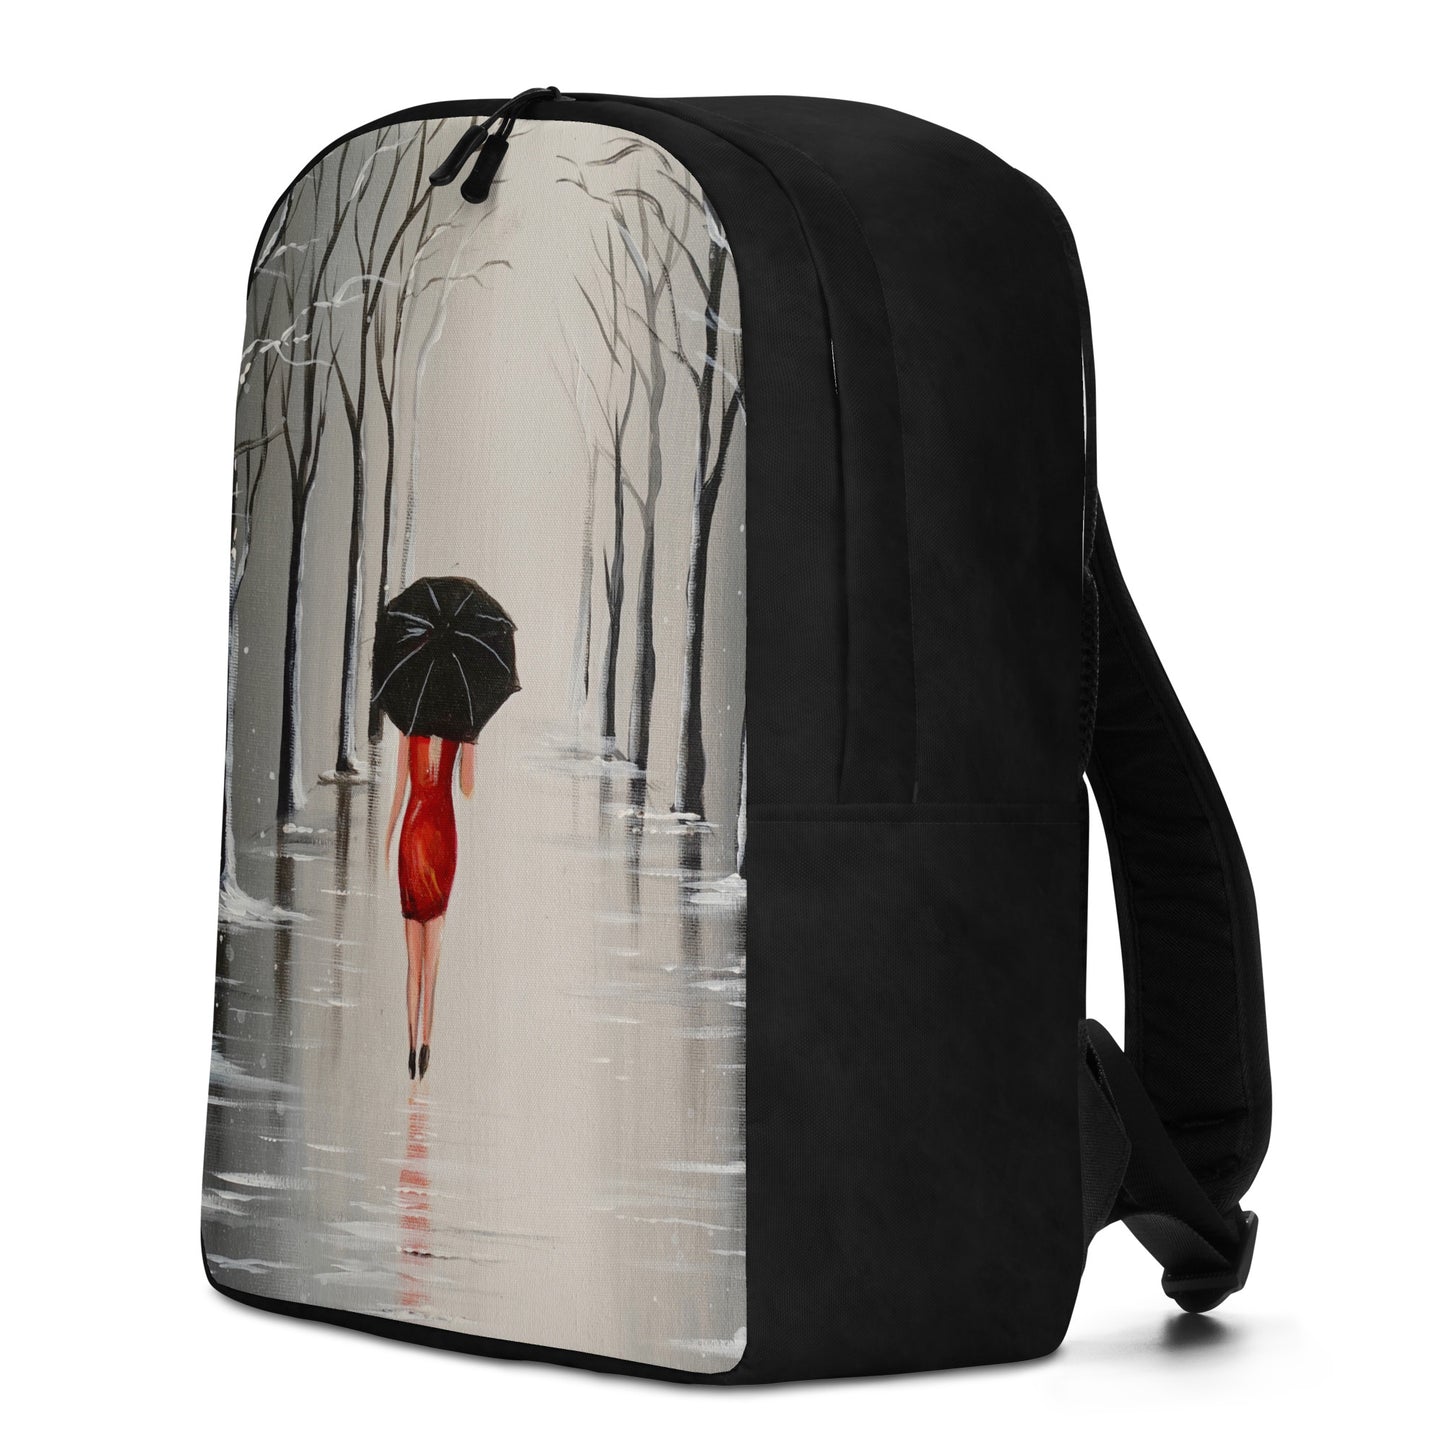 Backpack "Walking in the rain" ldeal for laptop Secret pocket Travel Art